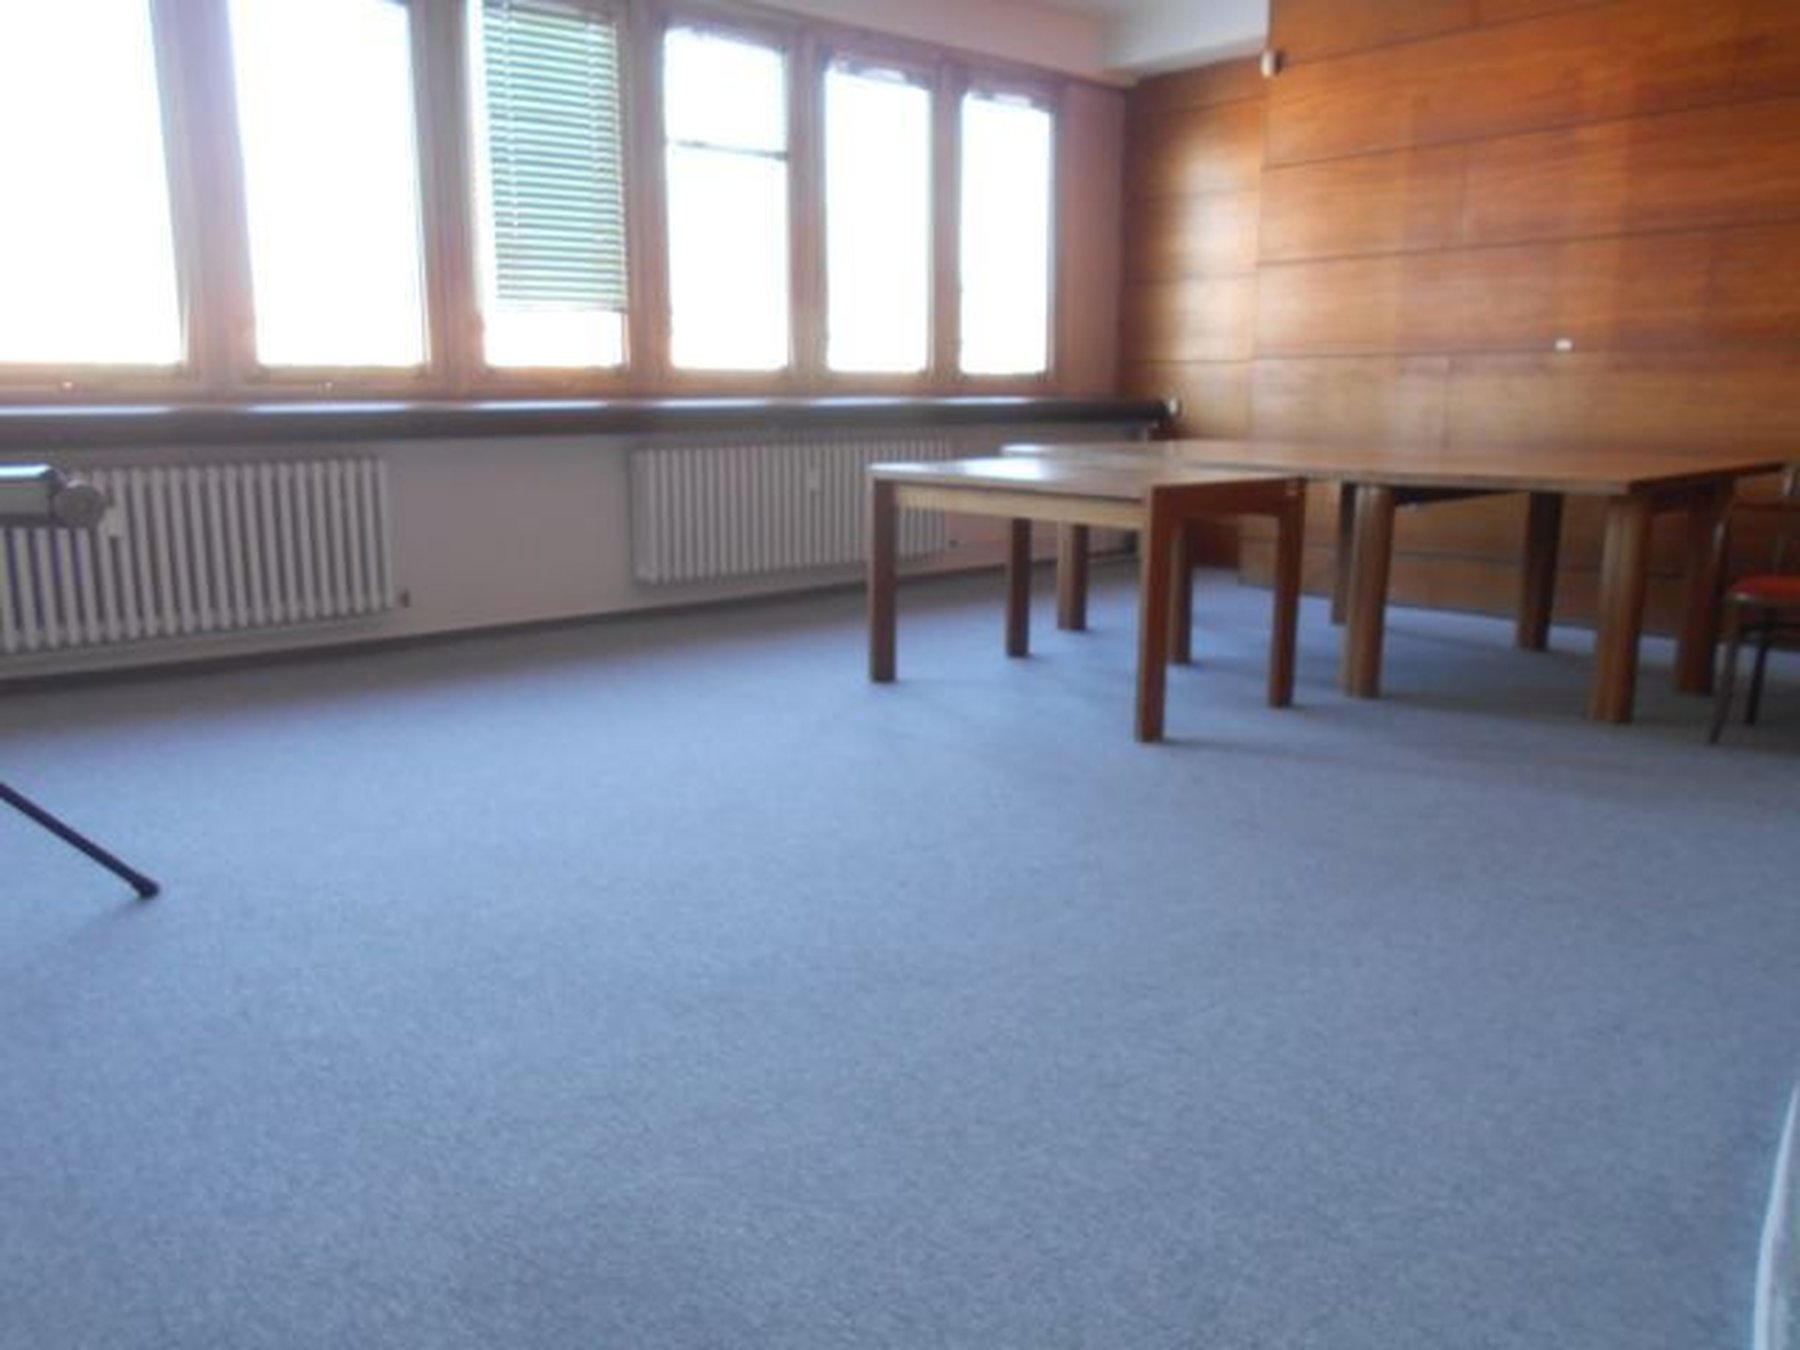 Kancelárie, administratívne priestory 15 m² , Kompletná rekonštrukcia